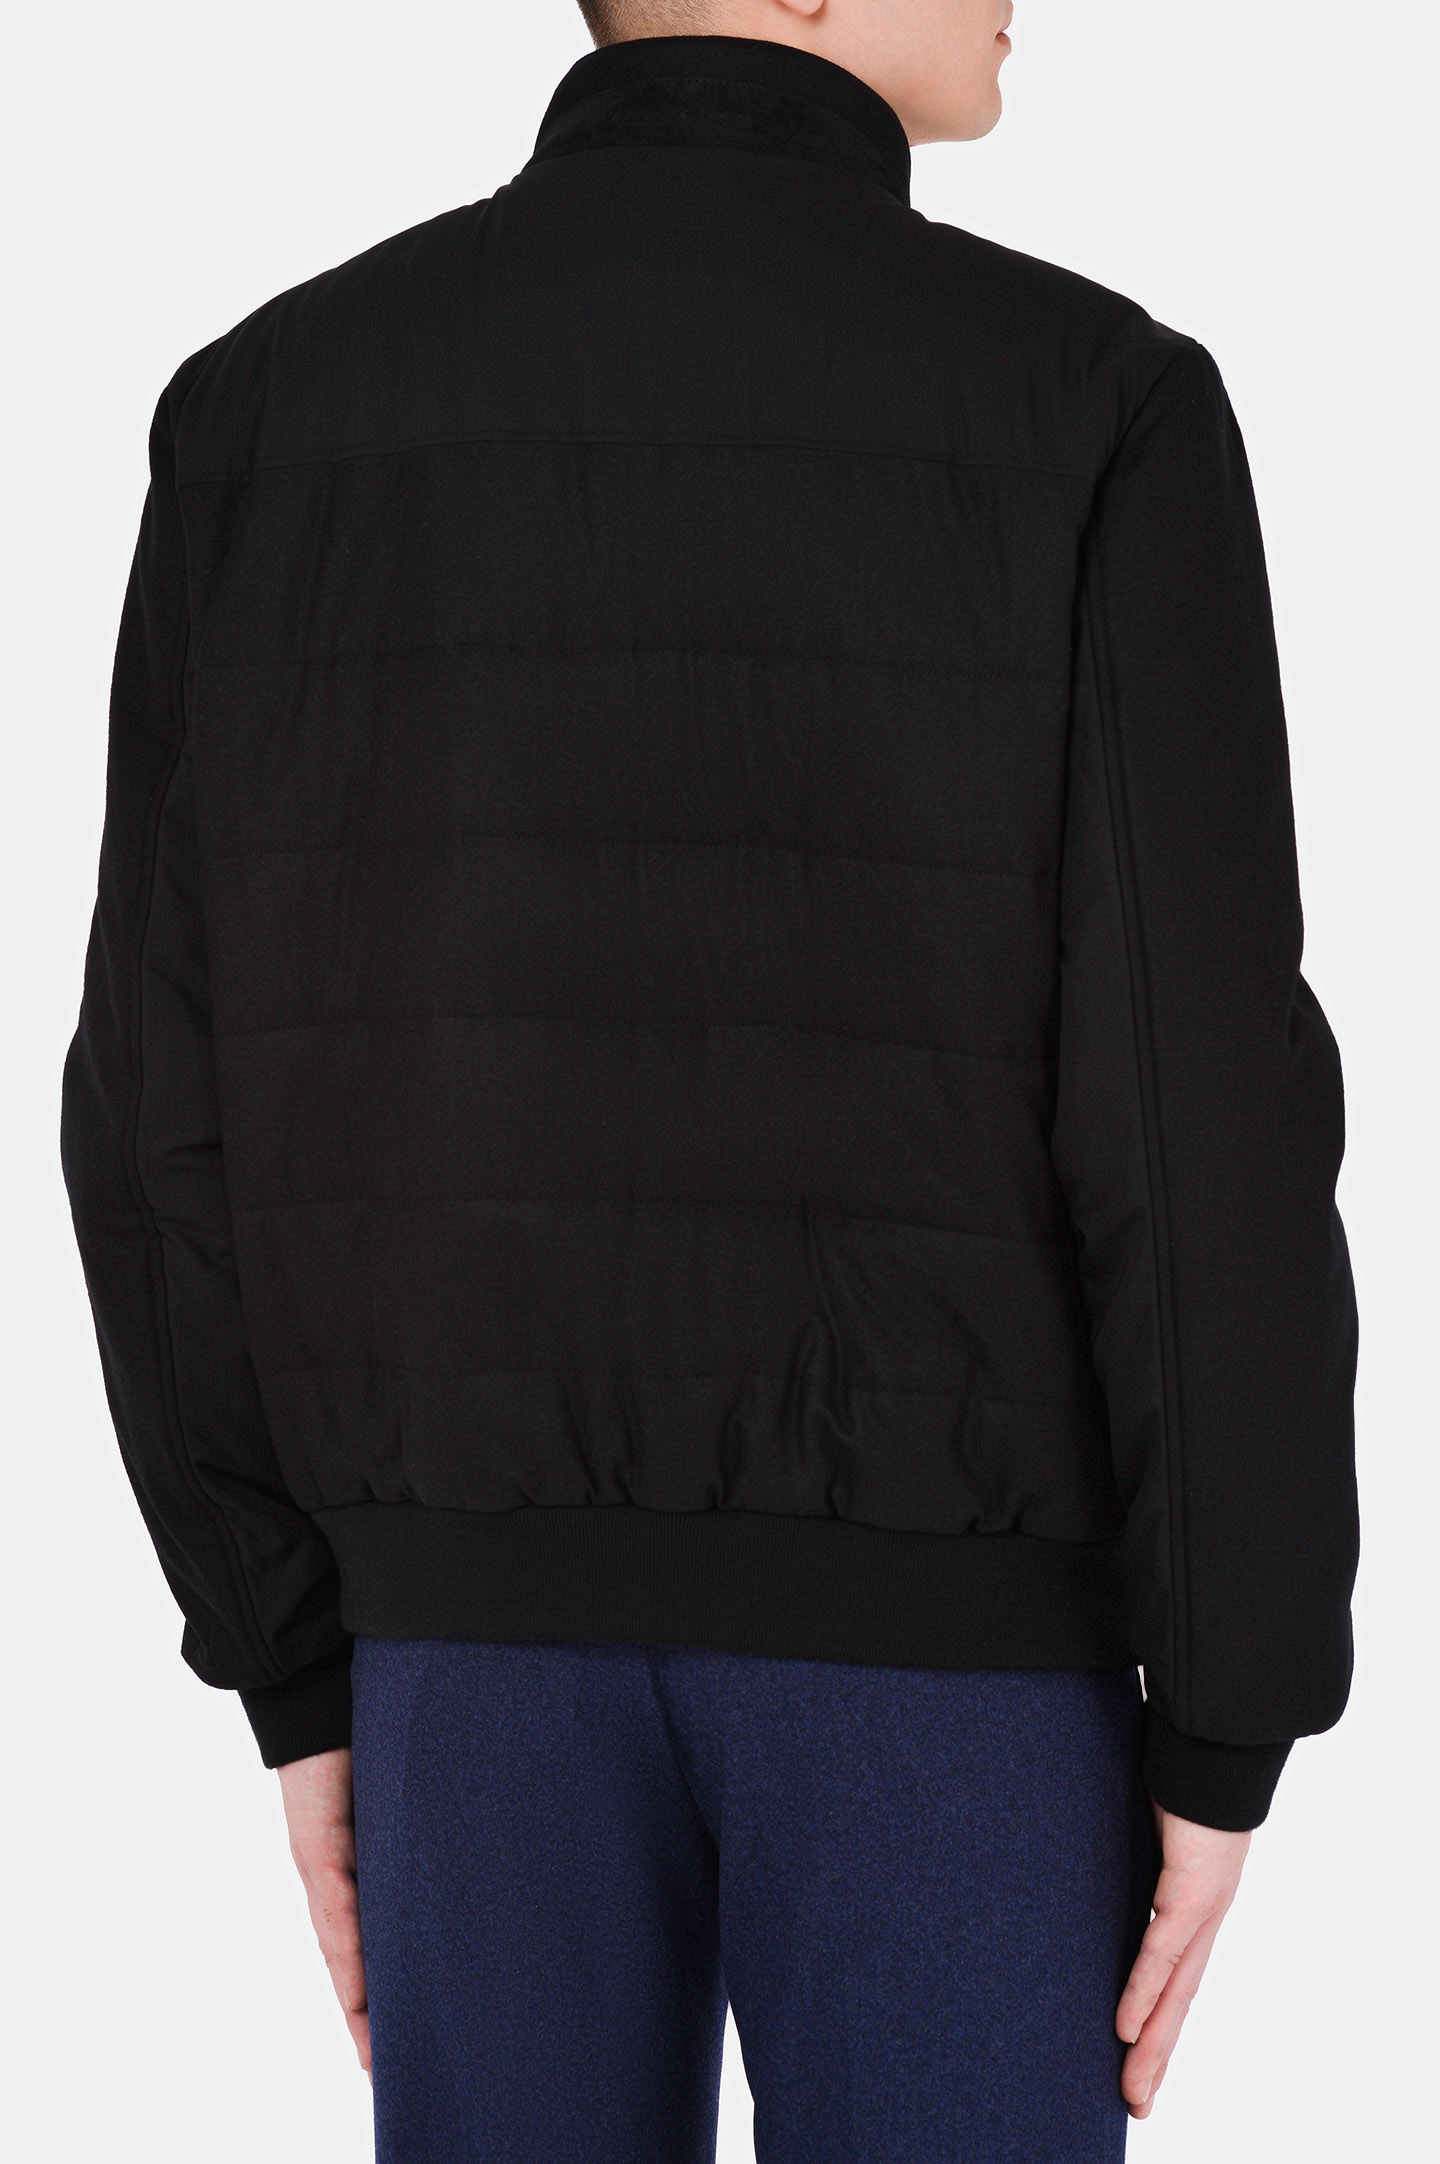 Куртка STEFANO RICCI MDJ0300110 WC002G, цвет: Черный, Мужской